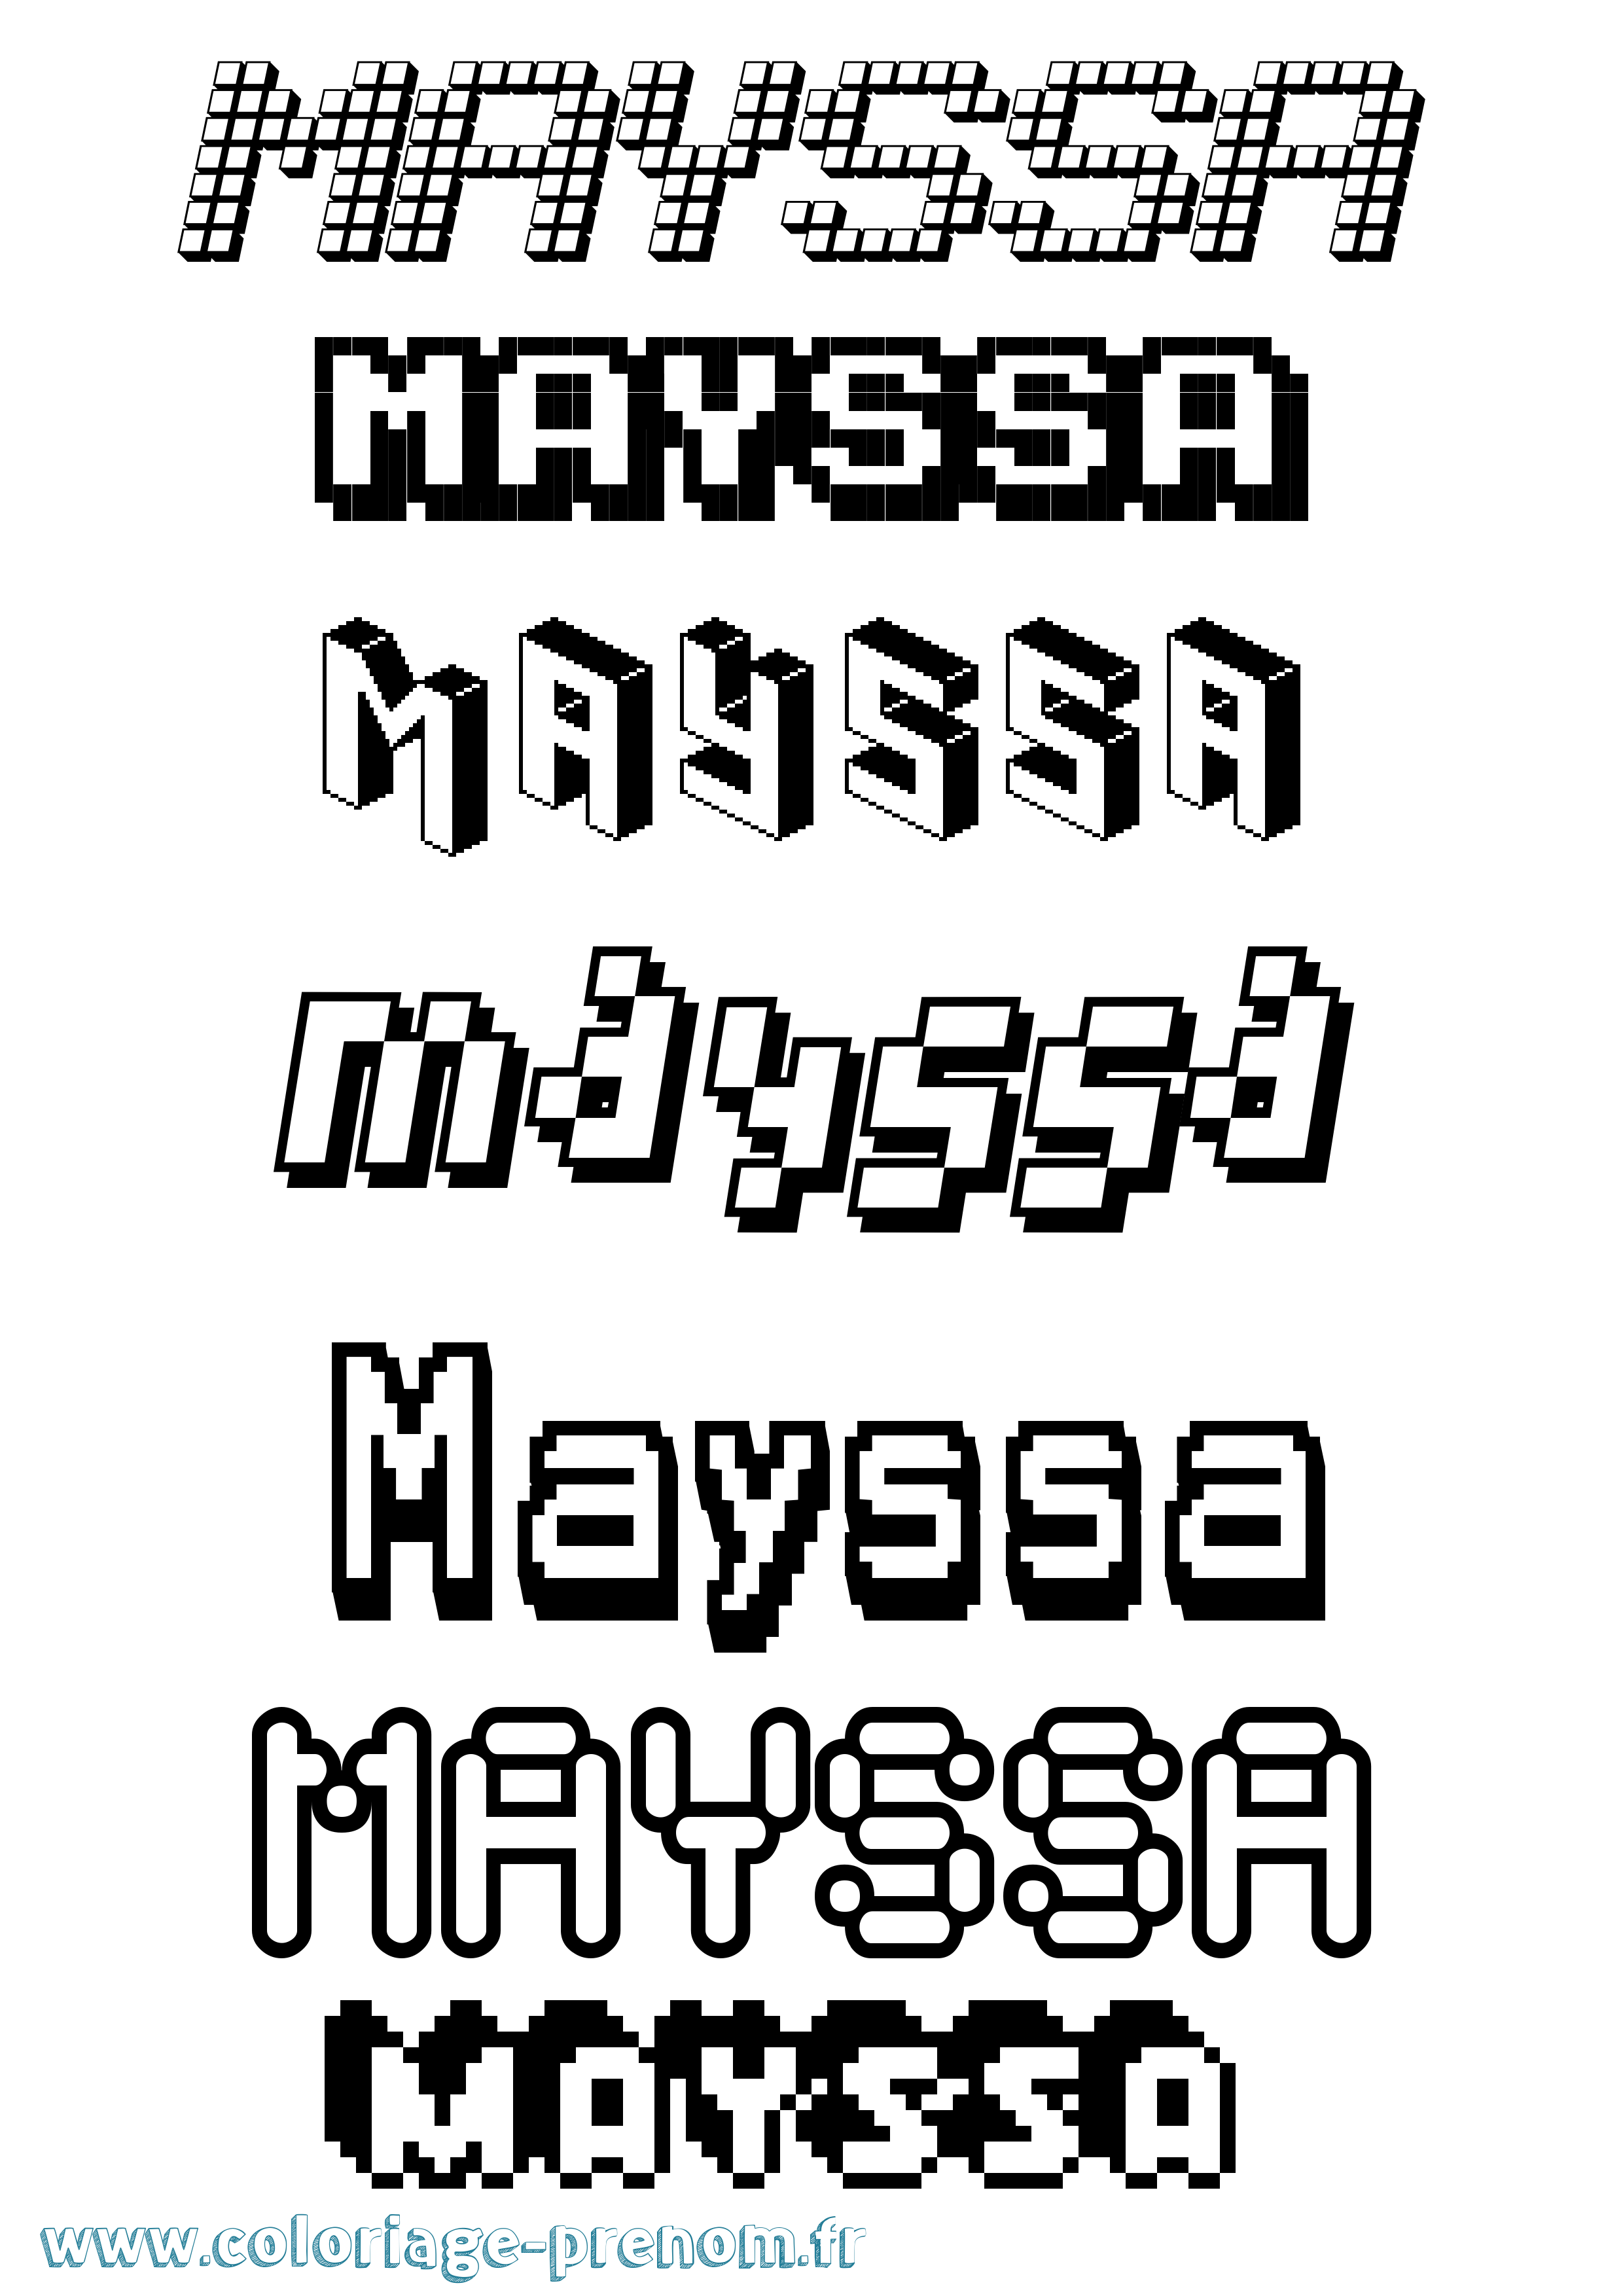 Coloriage prénom Mayssa Pixel